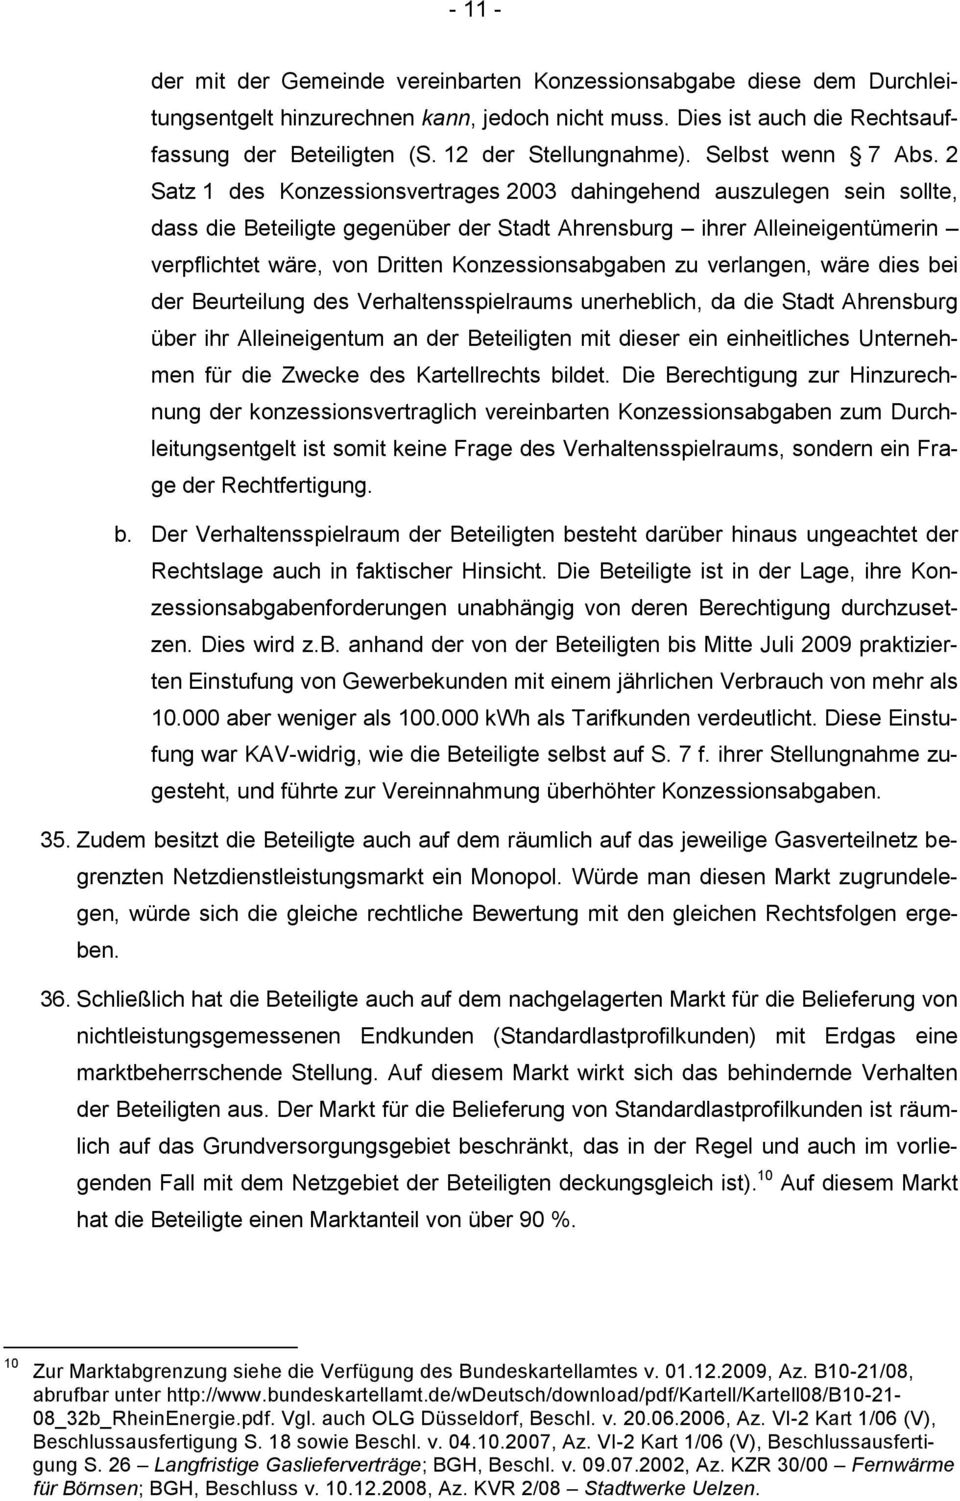 2 Satz 1 des Konzessionsvertrages 2003 dahingehend auszulegen sein sollte, dass die Beteiligte gegenüber der Stadt Ahrensburg ihrer Alleineigentümerin verpflichtet wäre, von Dritten